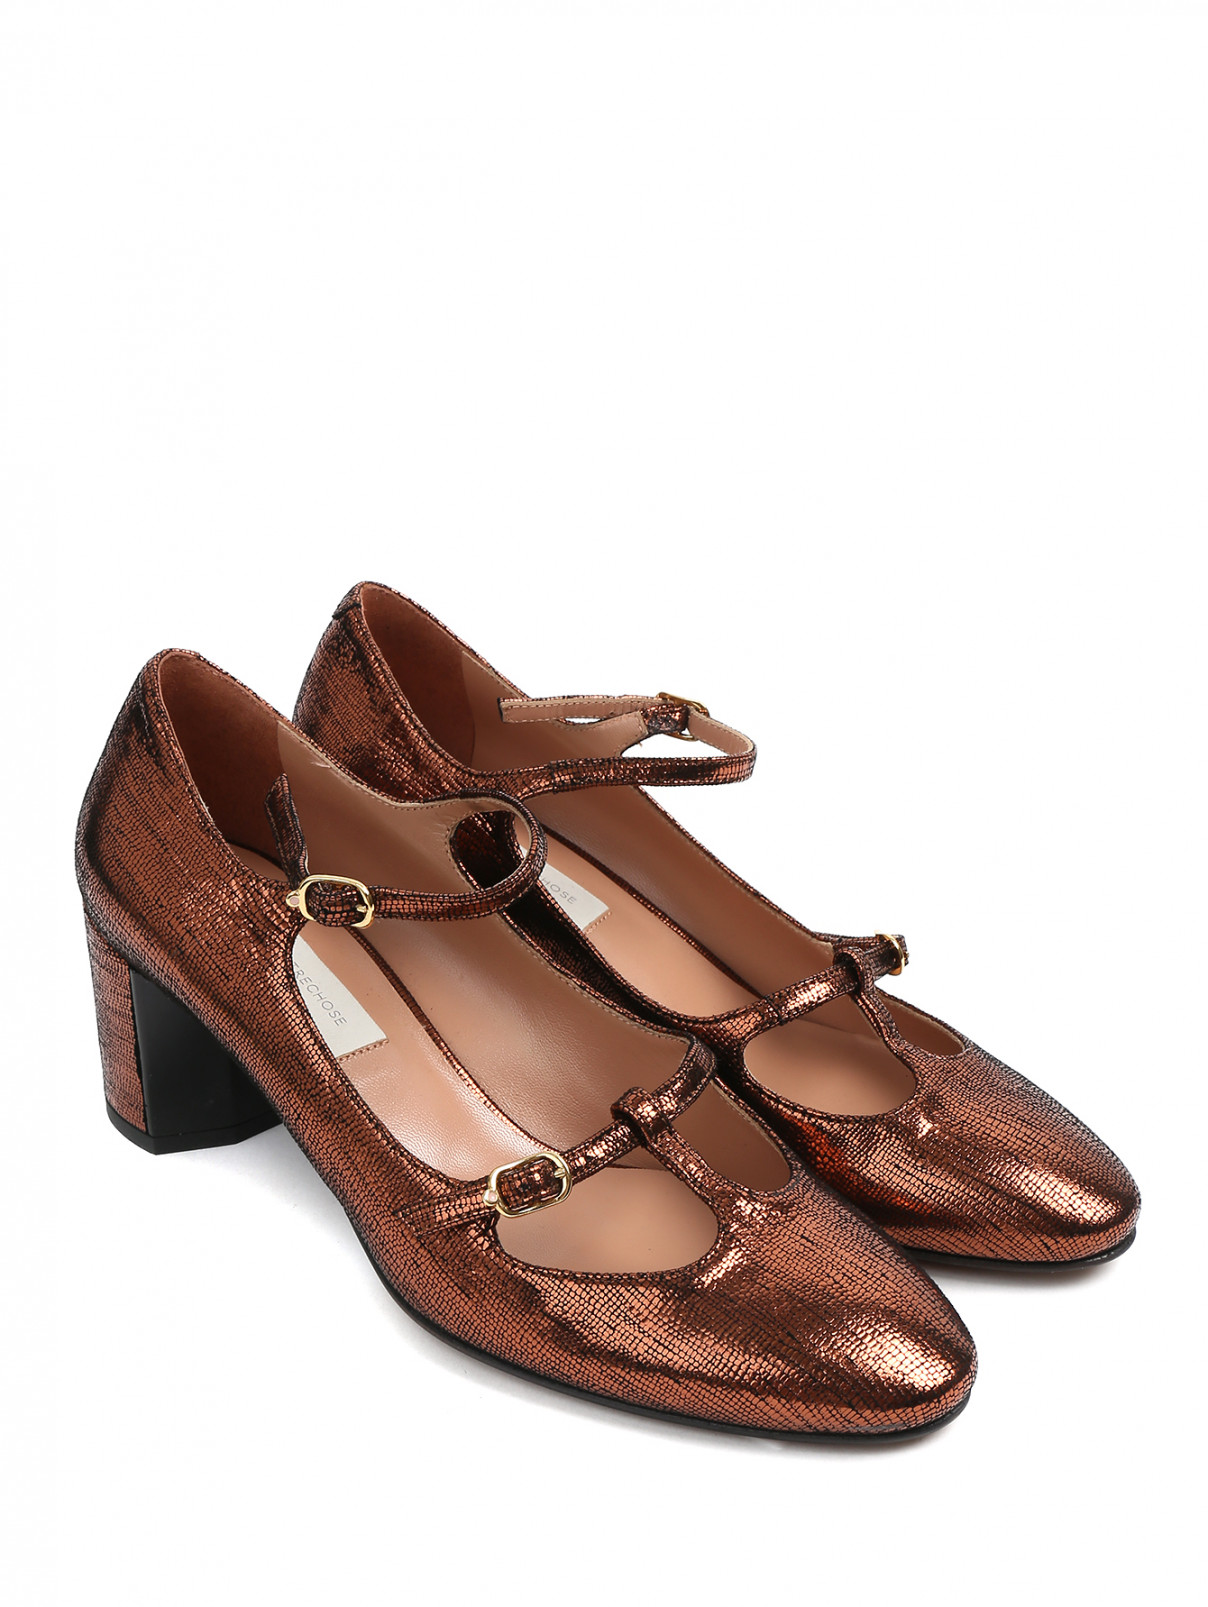 Туфли из кожи металлик на устойчивом каблуке L'Autre Chose  –  Общий вид  – Цвет:  Металлик